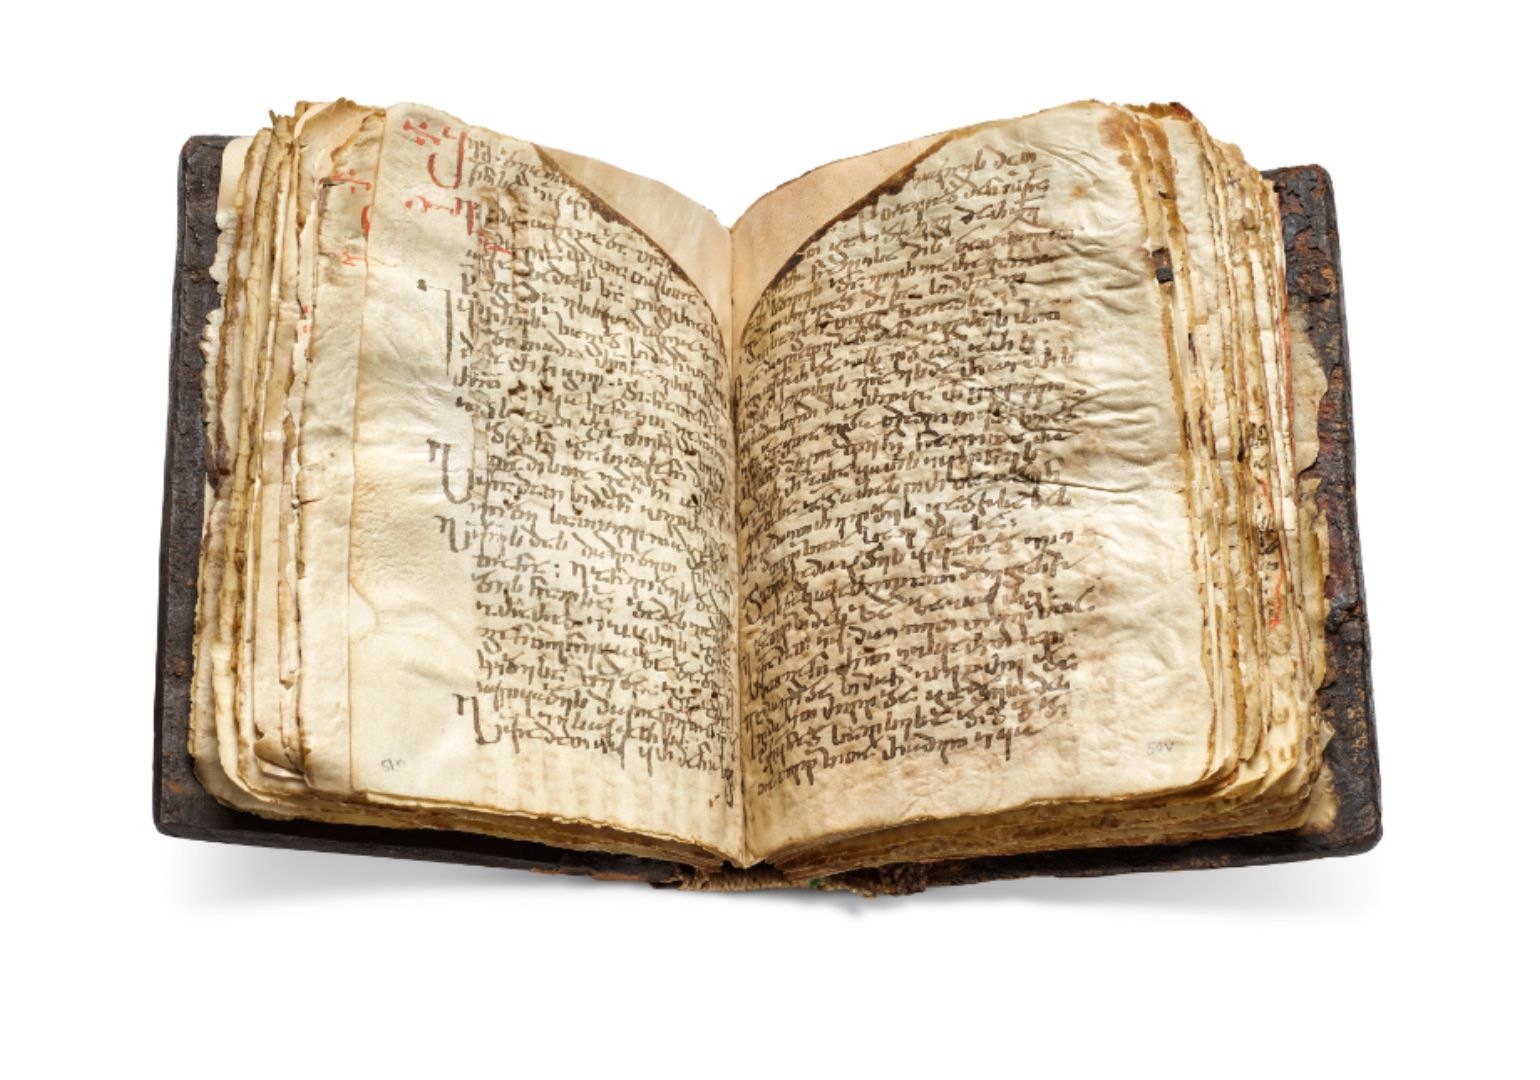 იოანე ზოსიმეს ხელნაწერი ბიძინა ივანიშვილმა £1,250,000-ად შეიძინა